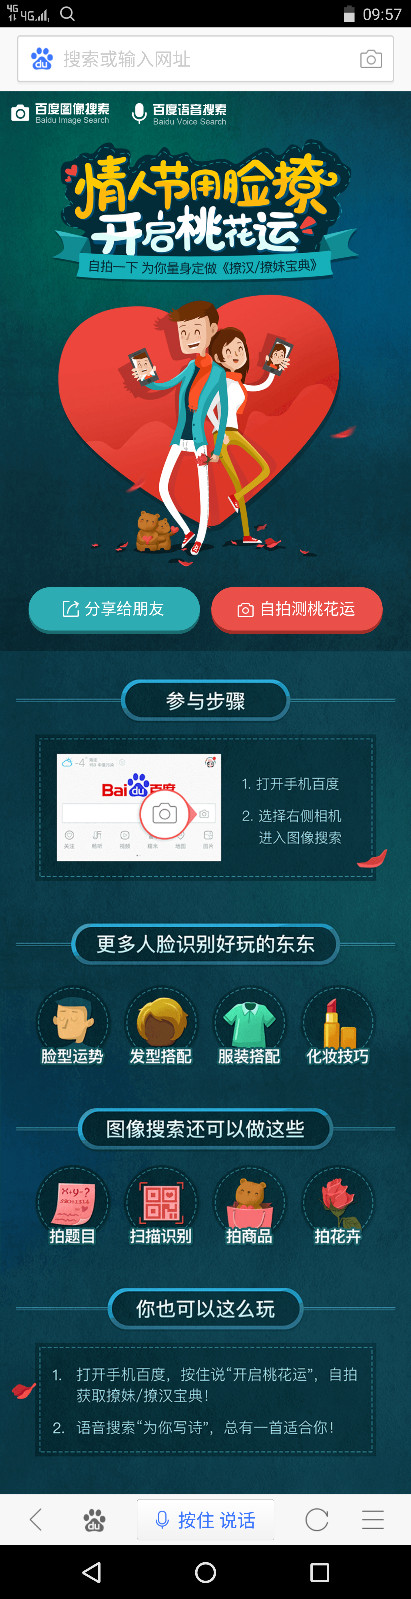 情人节秀人工智能技术：Baidu 百度搜索 推出 魅力值测评 和 自动生成诗歌 功能